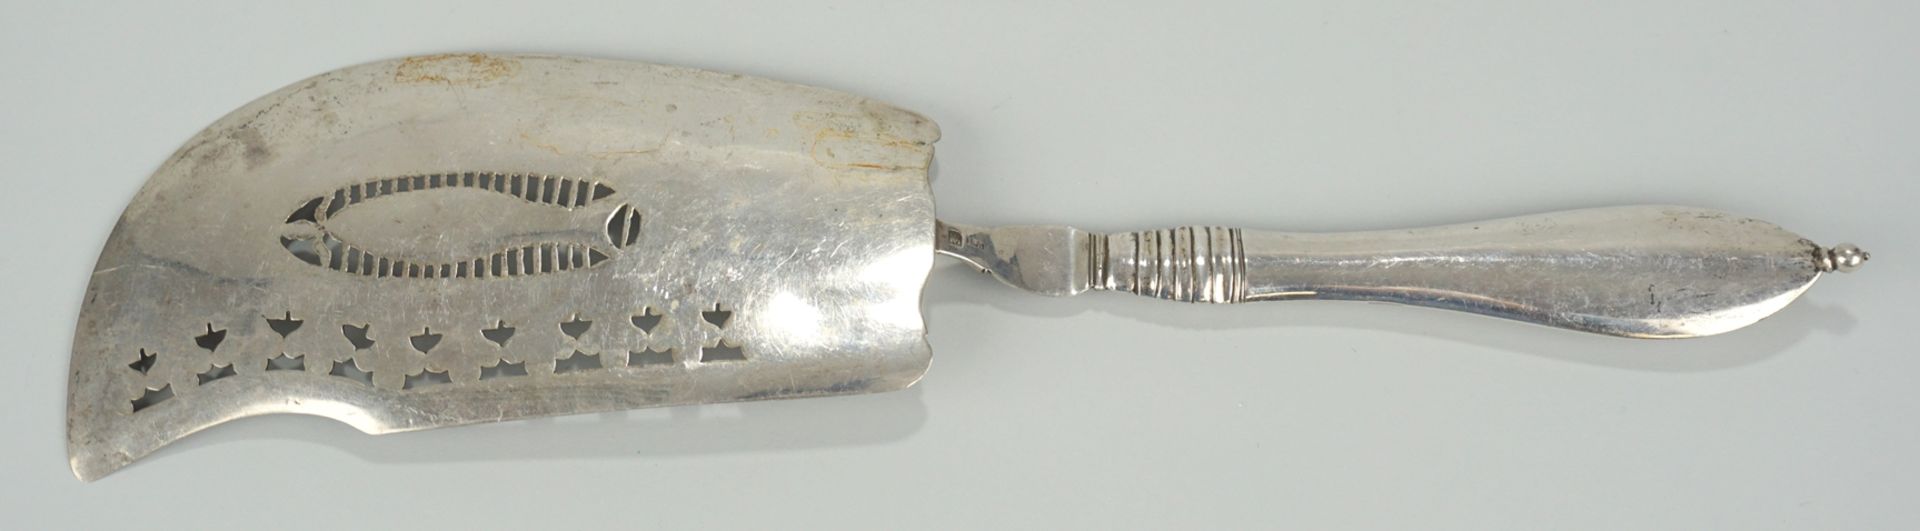 Fischheber, min. 800er Silber, 1. Hälfte 19.Jh. - Image 2 of 2